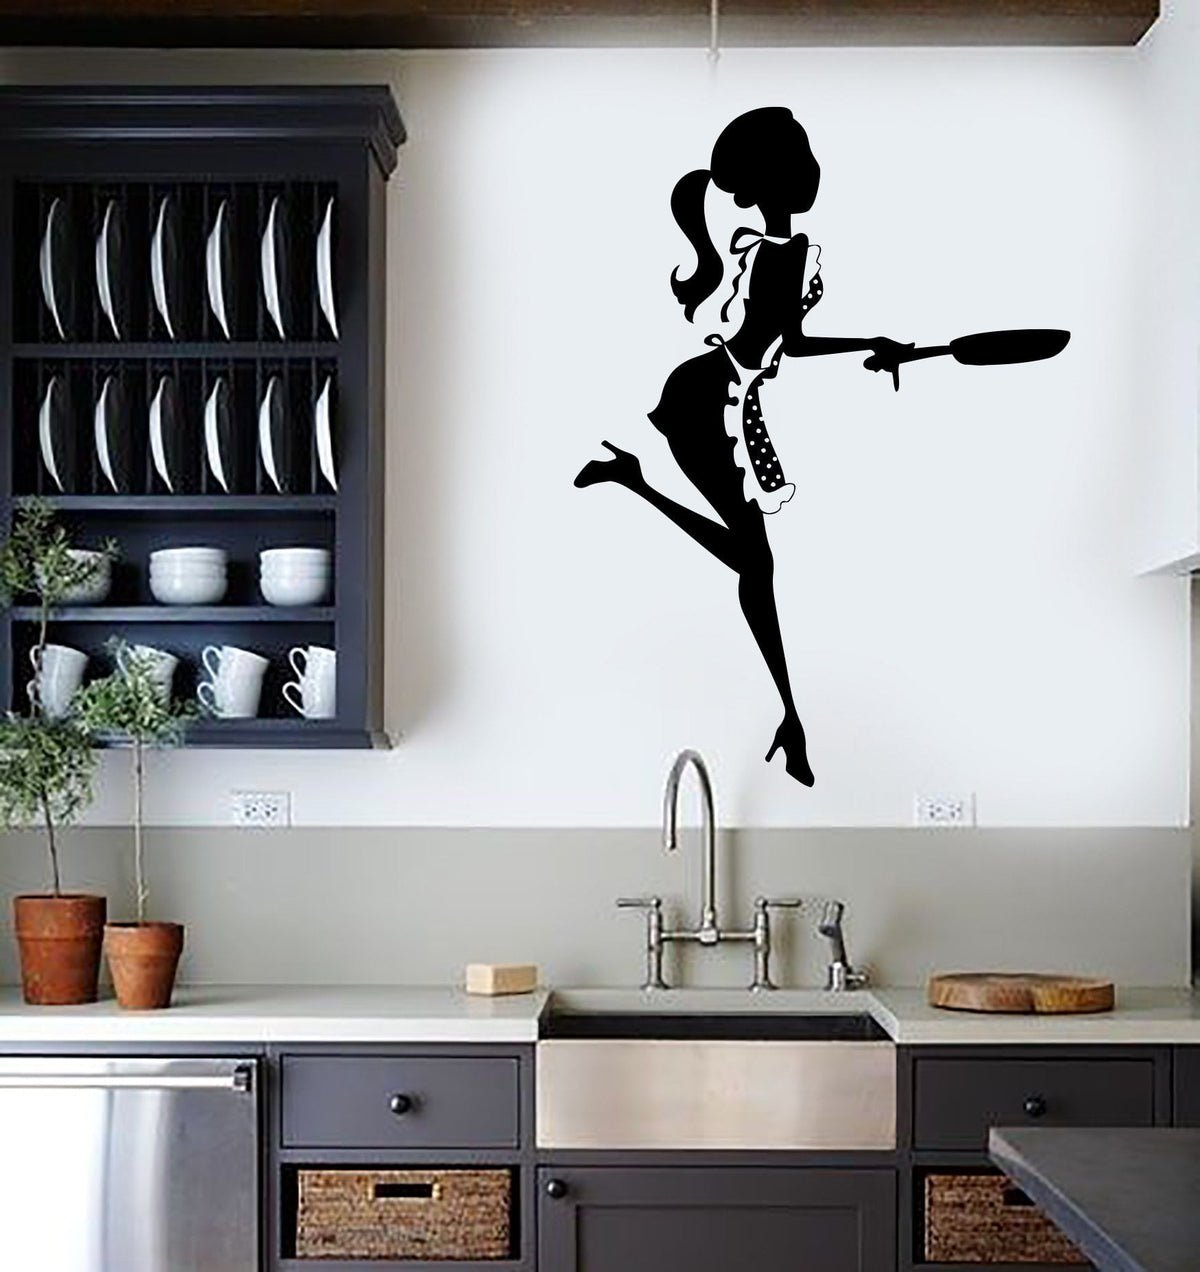 Как нарисовать рисунок на стене на кухне: подробная инструкция